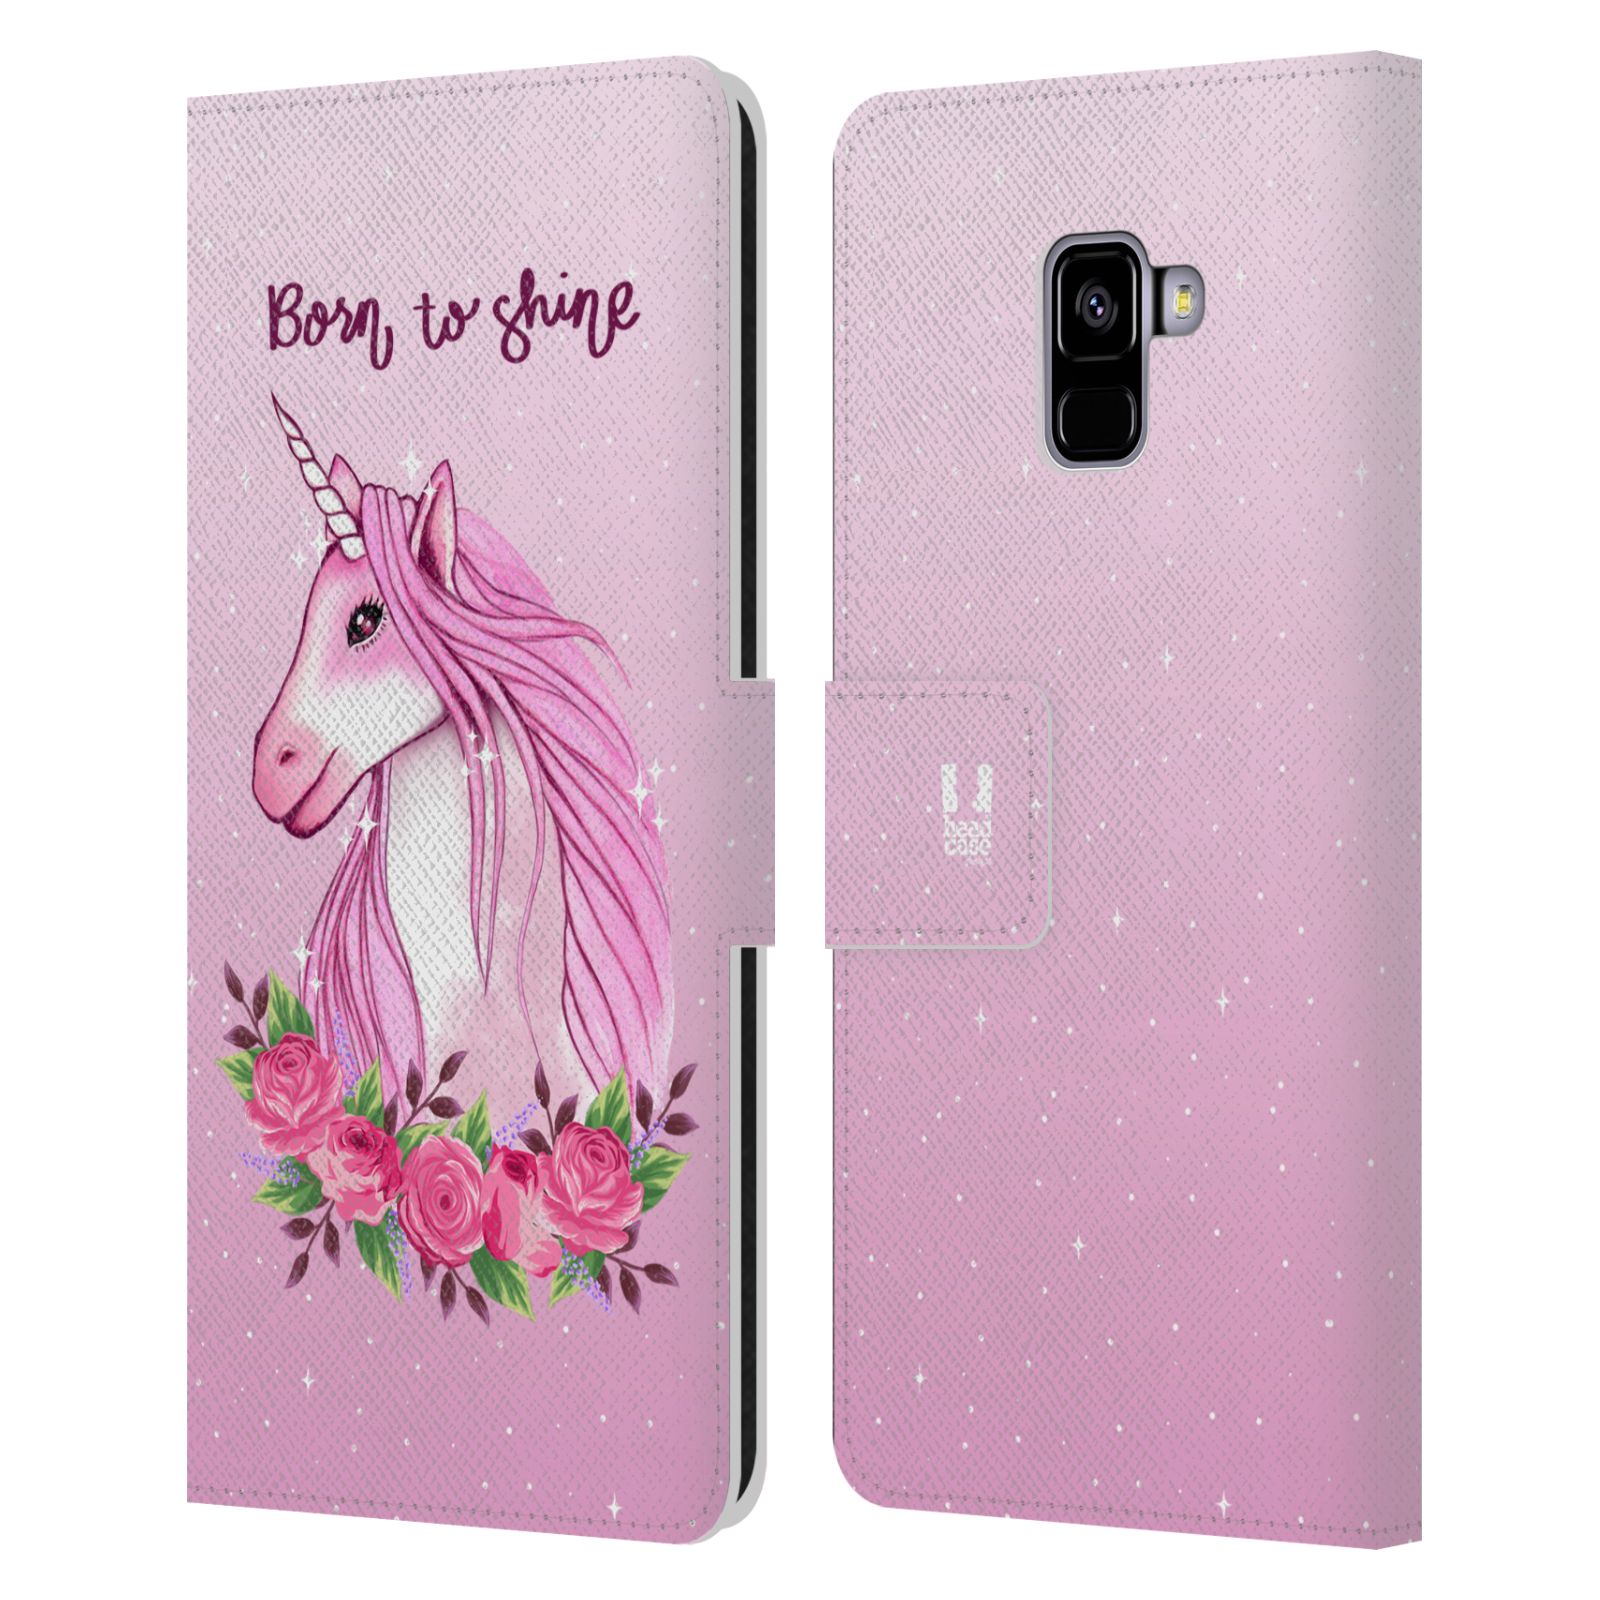 Pouzdro na mobil Samsung Galaxy A8 PLUS 2018 - Head Case - Růžový jednorožec růže